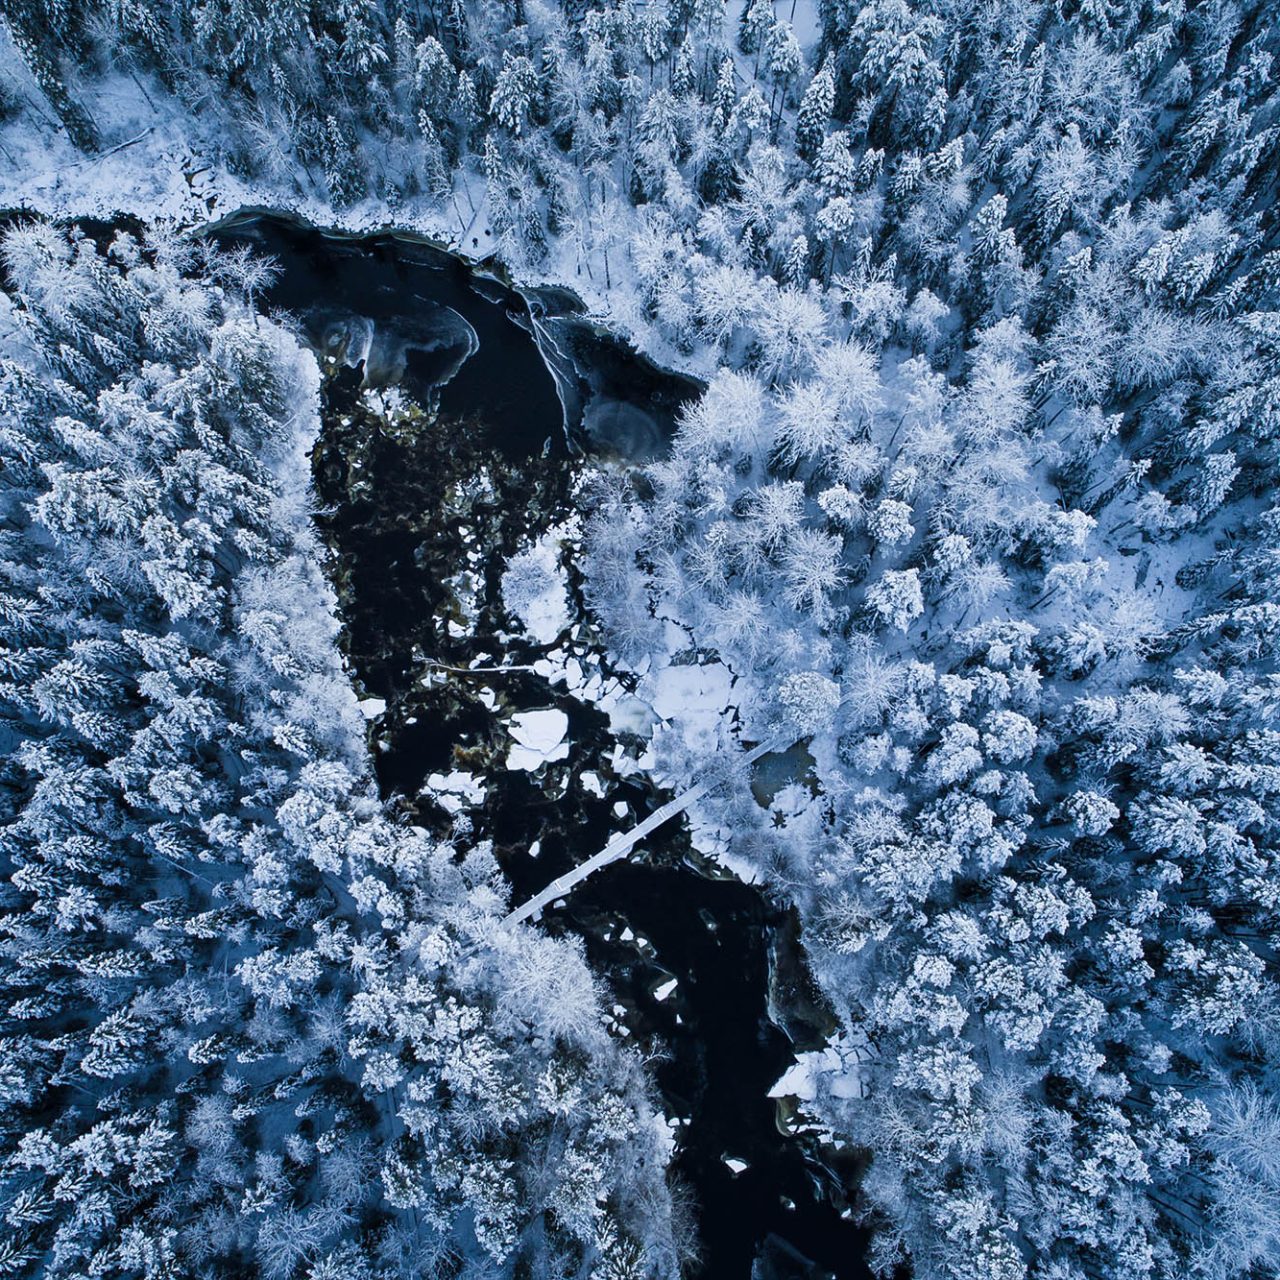 Winter scenery on Lapland